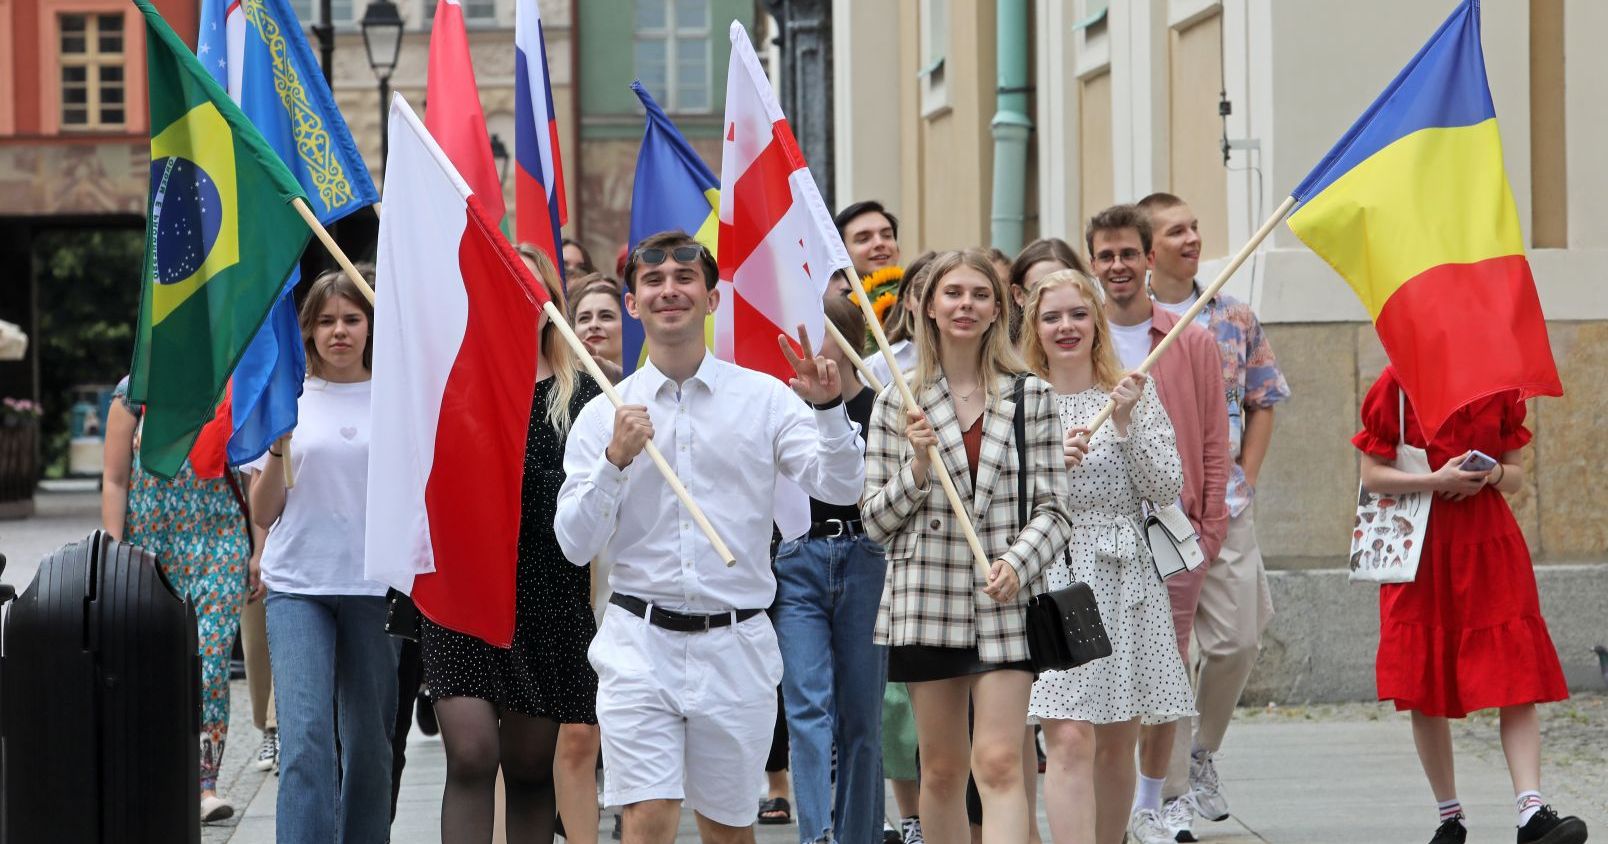  Zdjęcie przedstawia grupę ludzi, która idzie w kierunku fotografia, trzymając duże flagi różnych państw.